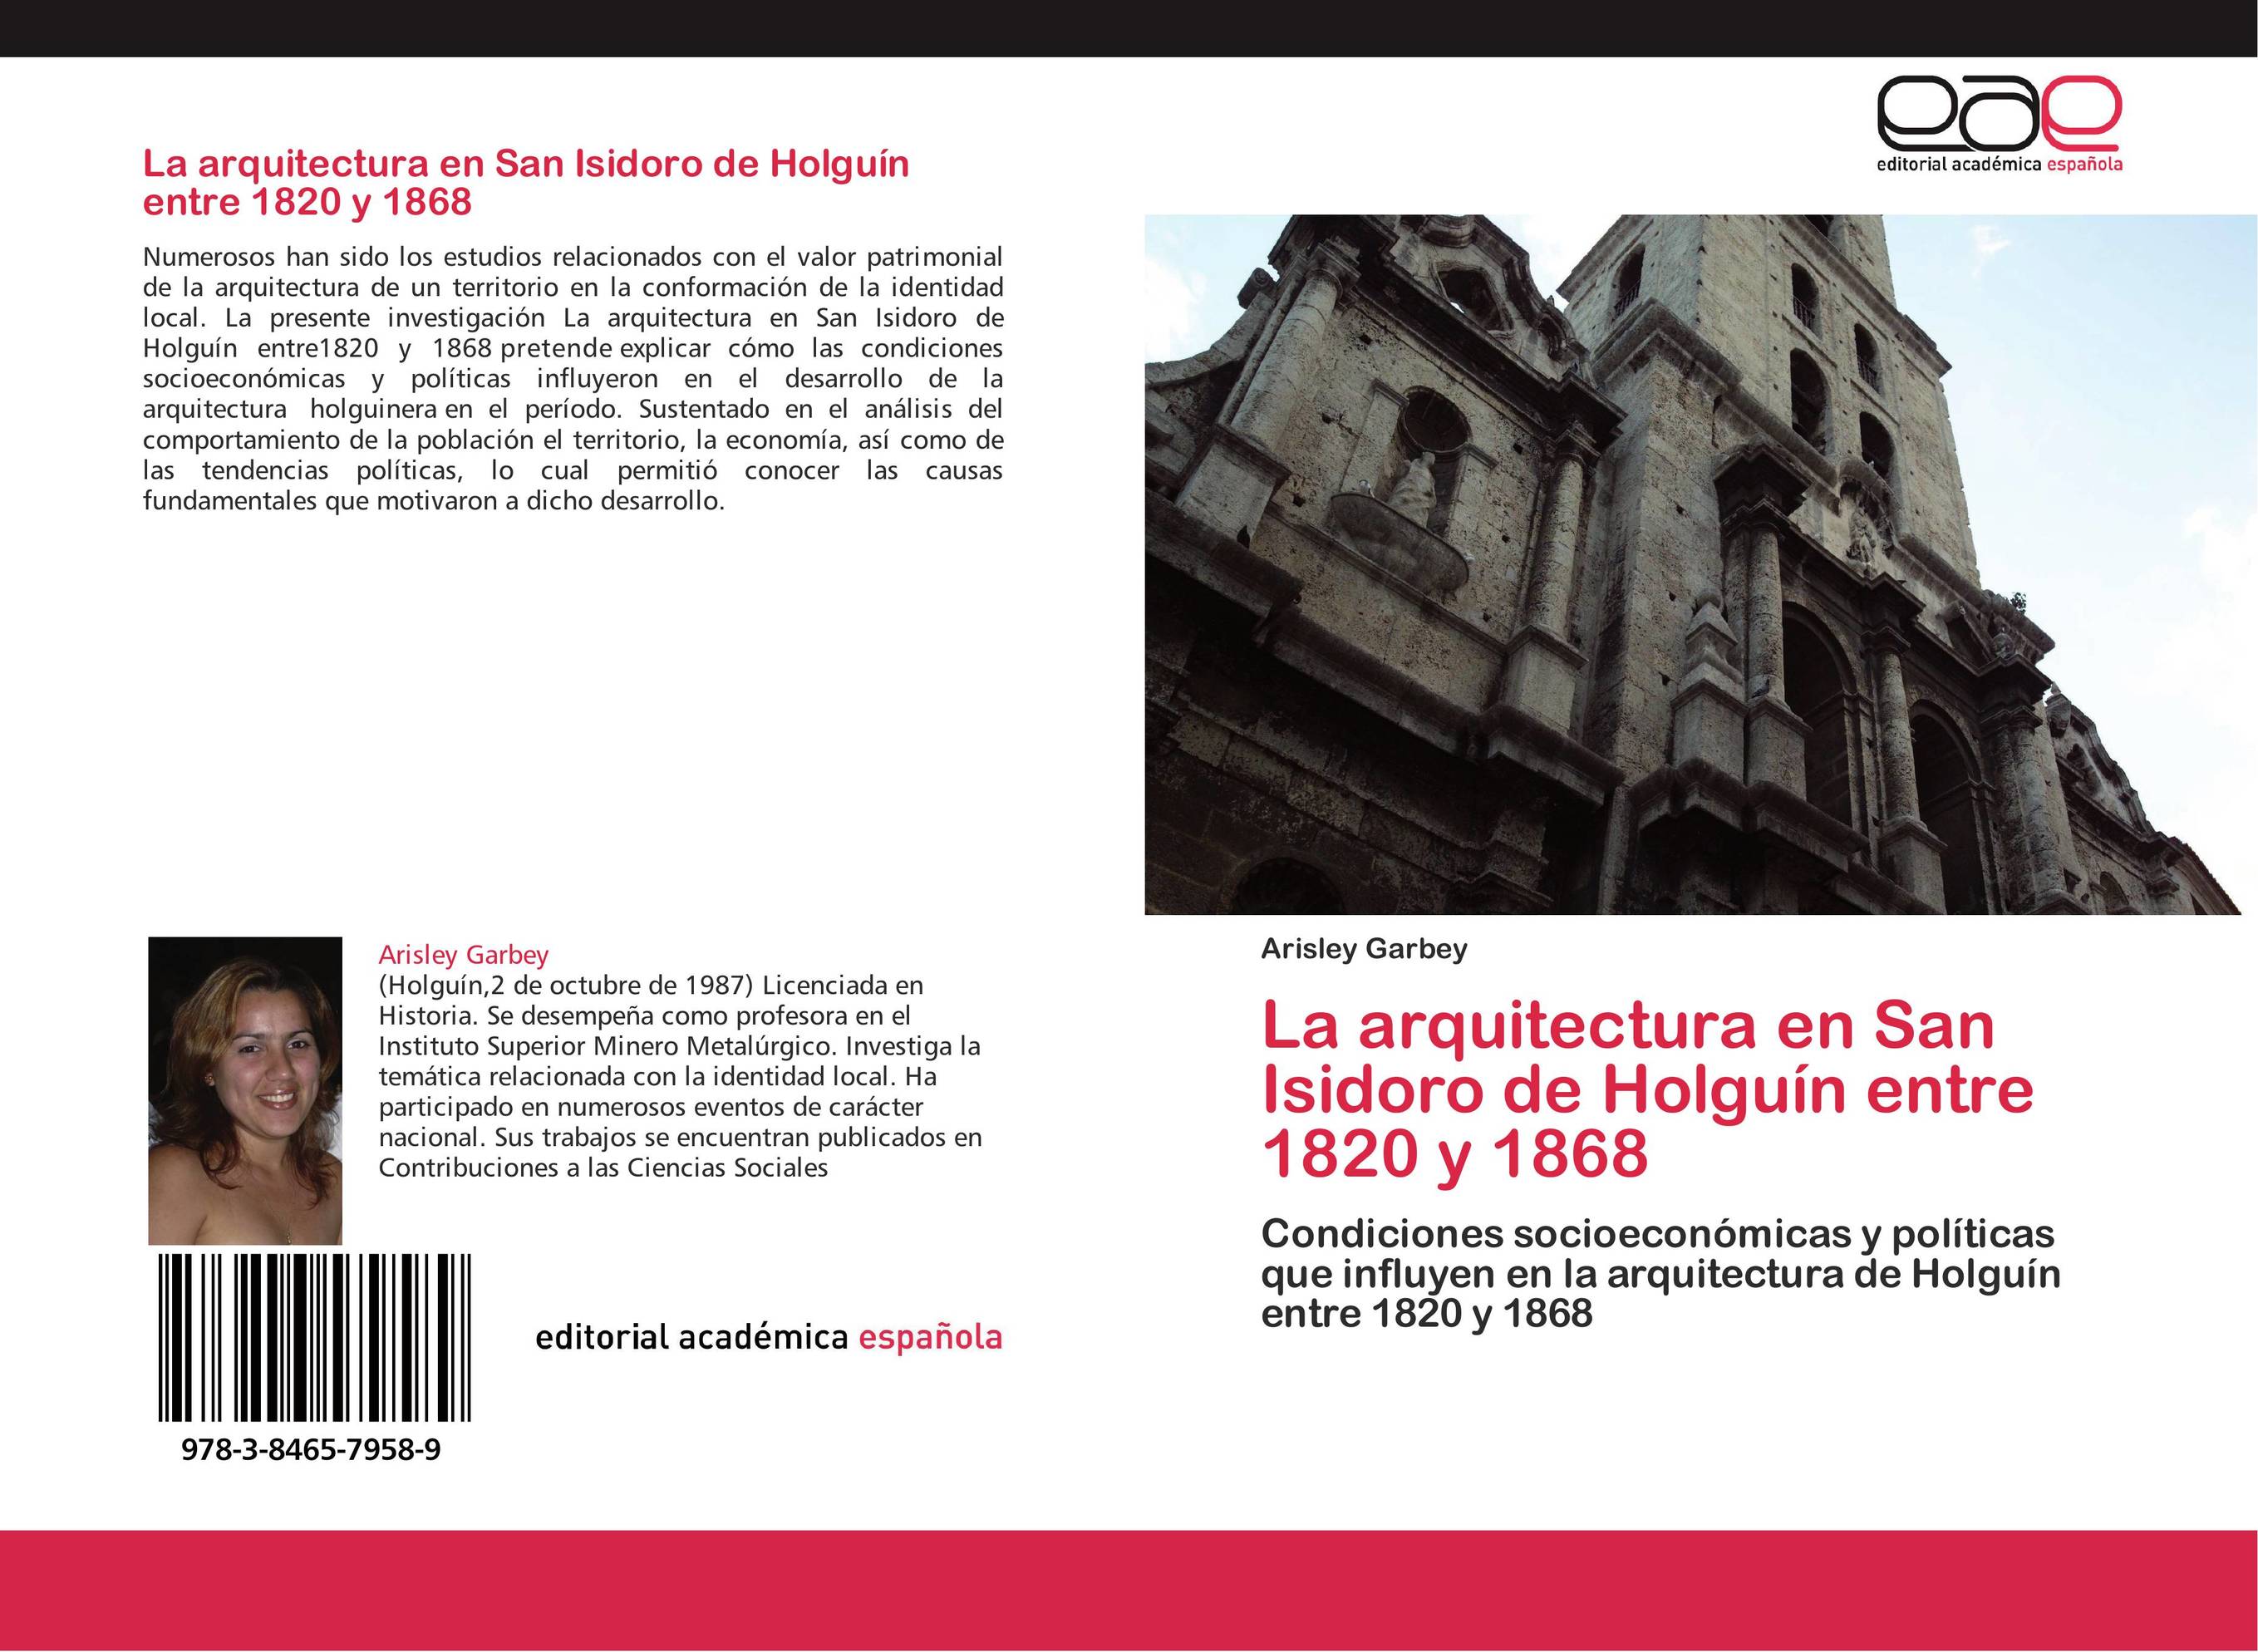 La arquitectura en San Isidoro de Holguín entre 1820 y 1868